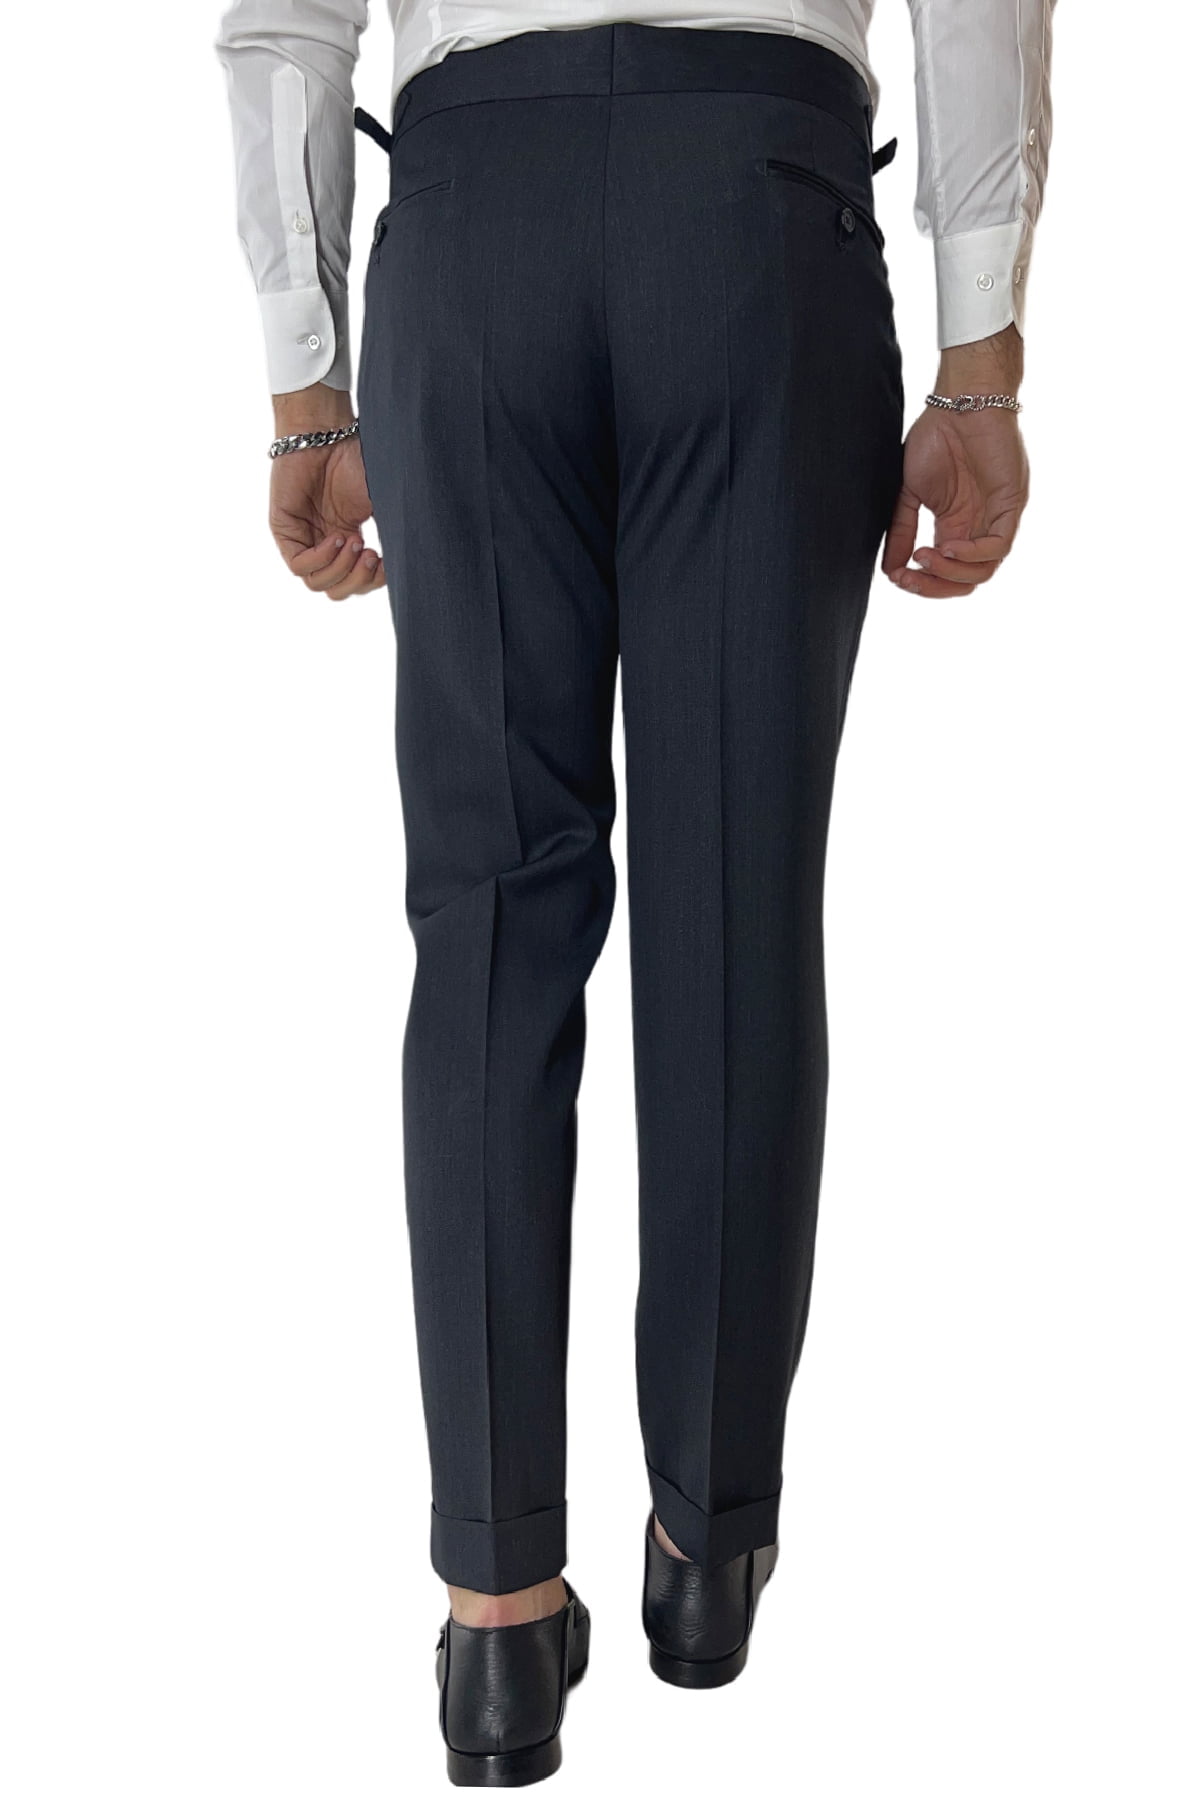 Pantalone uomo grigio scuro fresco lana Vitale Barberis vita alta con pinces fibbie laterali e risvolto 4cm